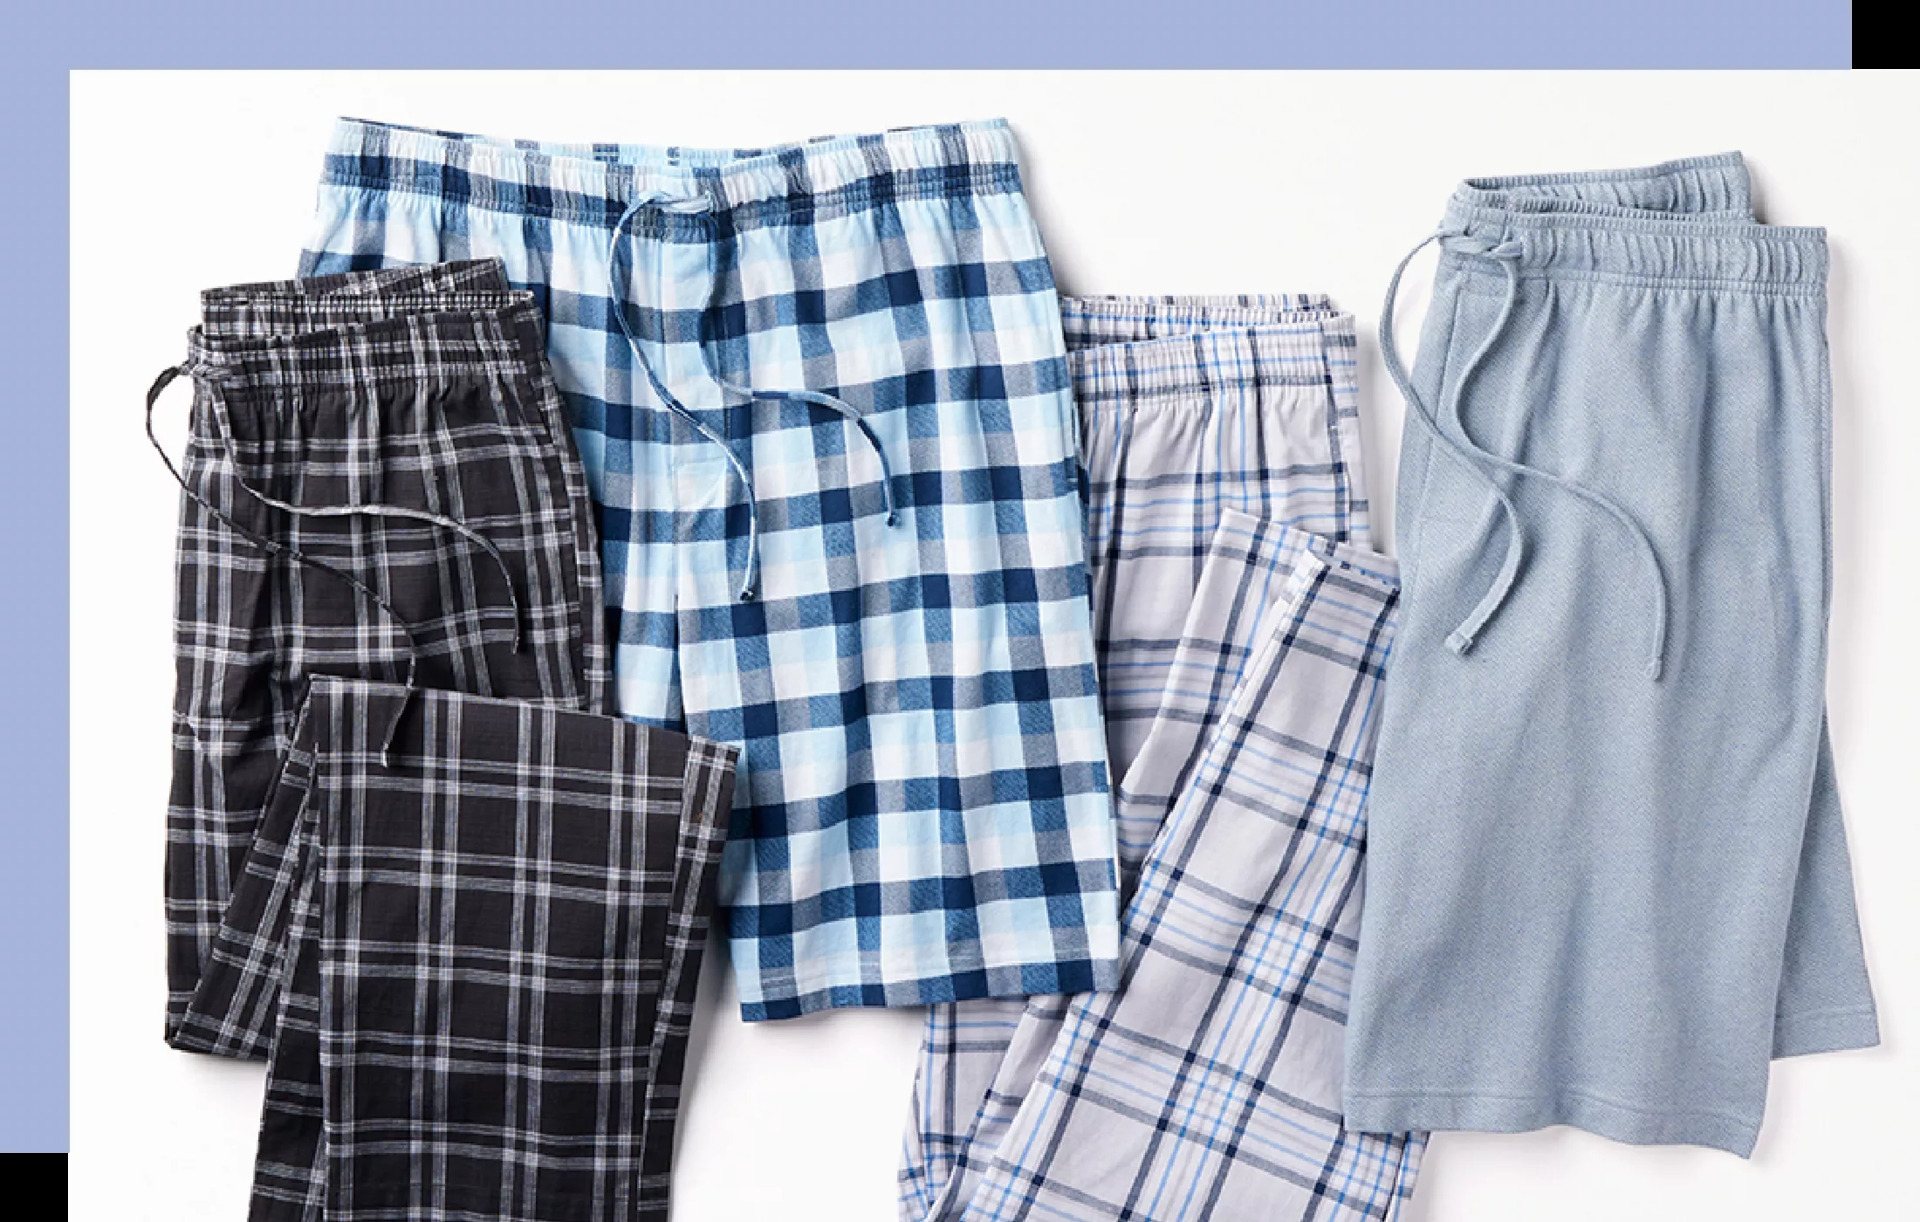 How To Fold Pajama Sets Together